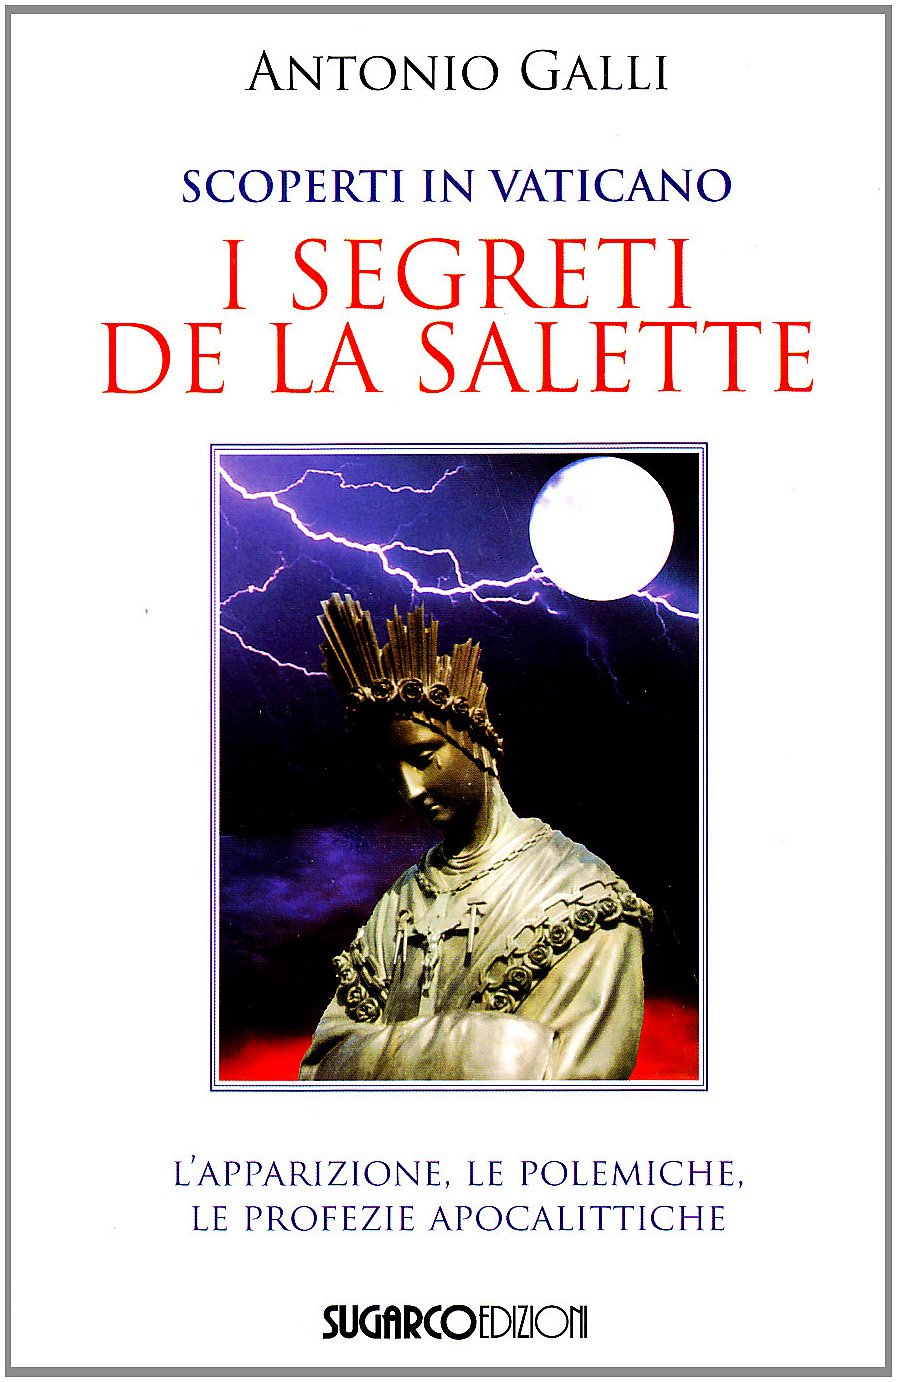 Libri Antonio Galli - Scoperti In Vaticano I Segreti De La Salette NUOVO SIGILLATO, EDIZIONE DEL 06/04/2007 SUBITO DISPONIBILE